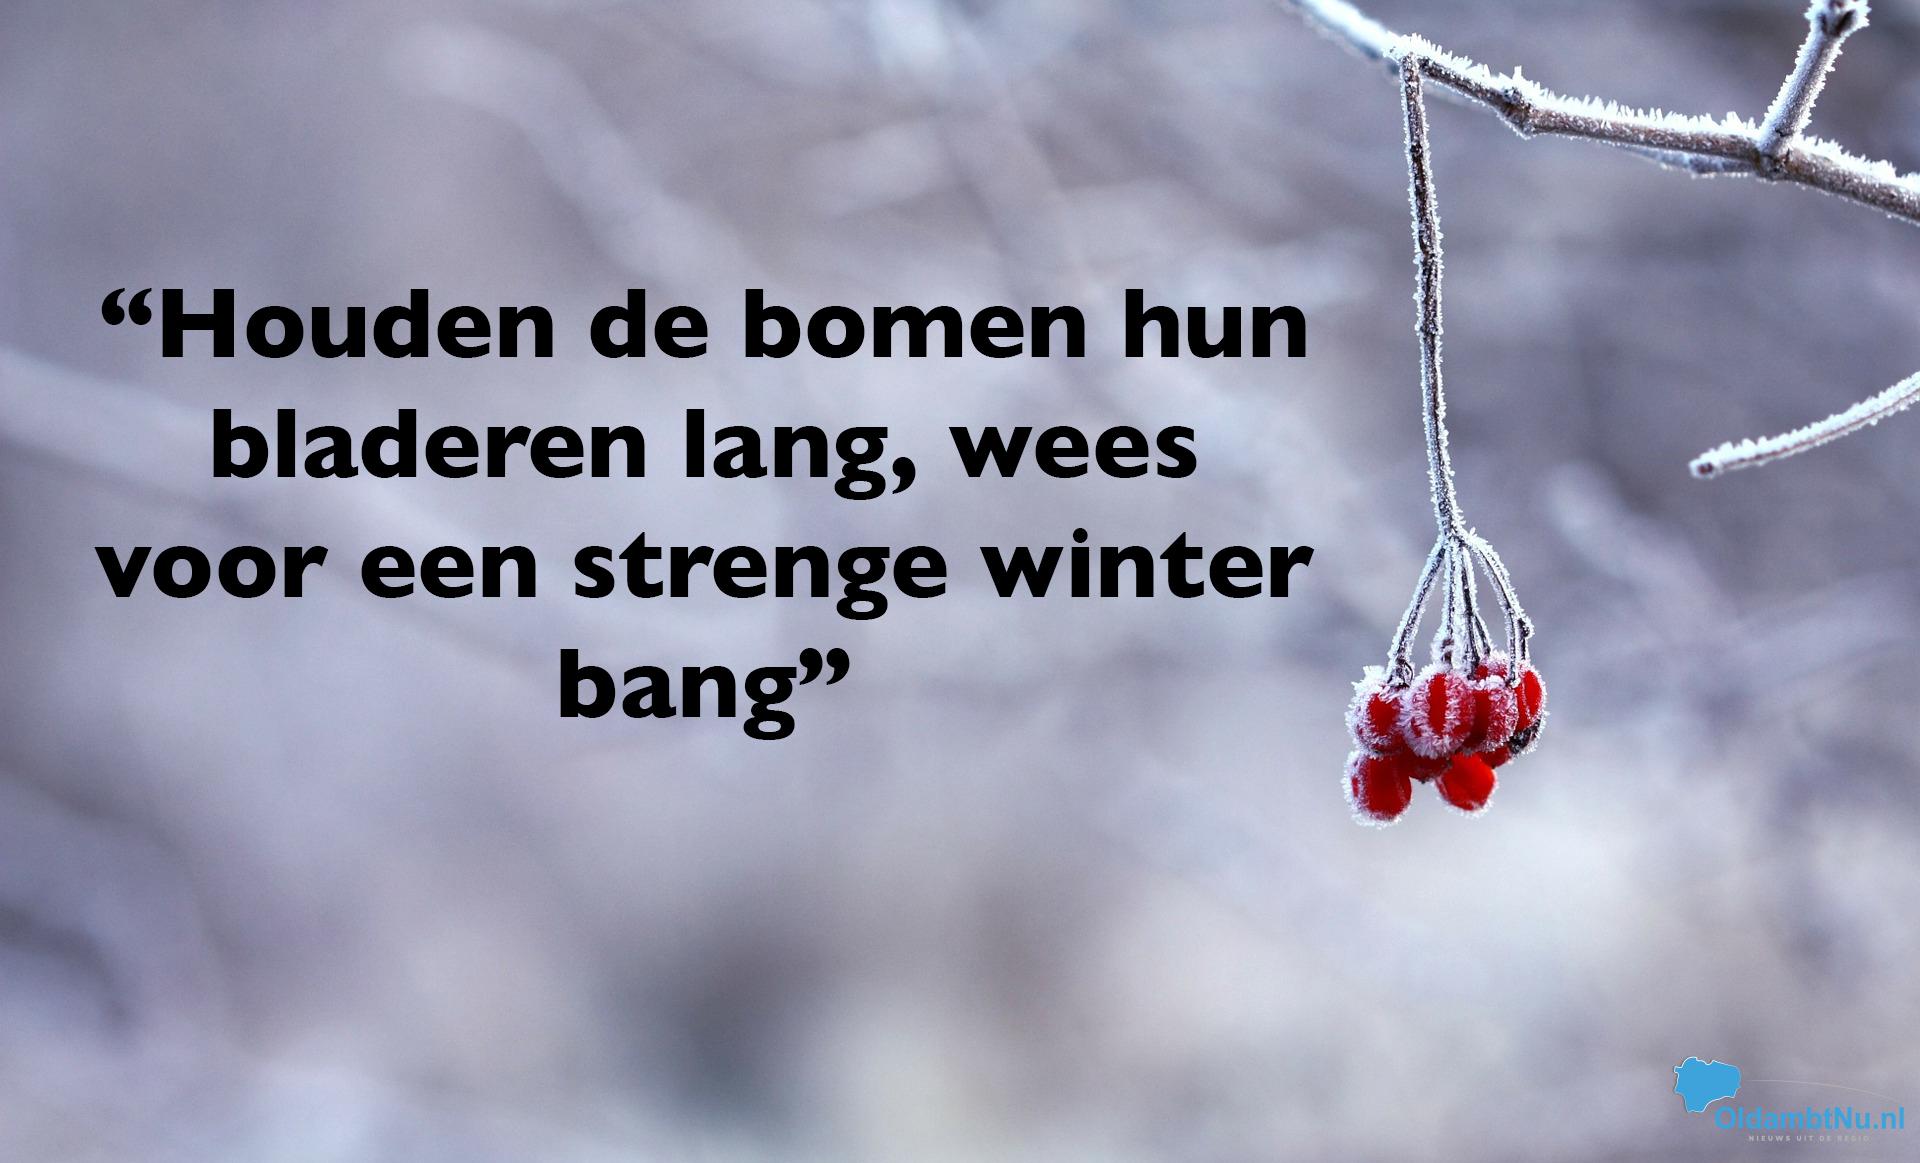 Weerspreuken voorspellen zachte en onstuimige winter; Elfstedenwinter  vrijwel uitgesloten - OldambtNu.nl